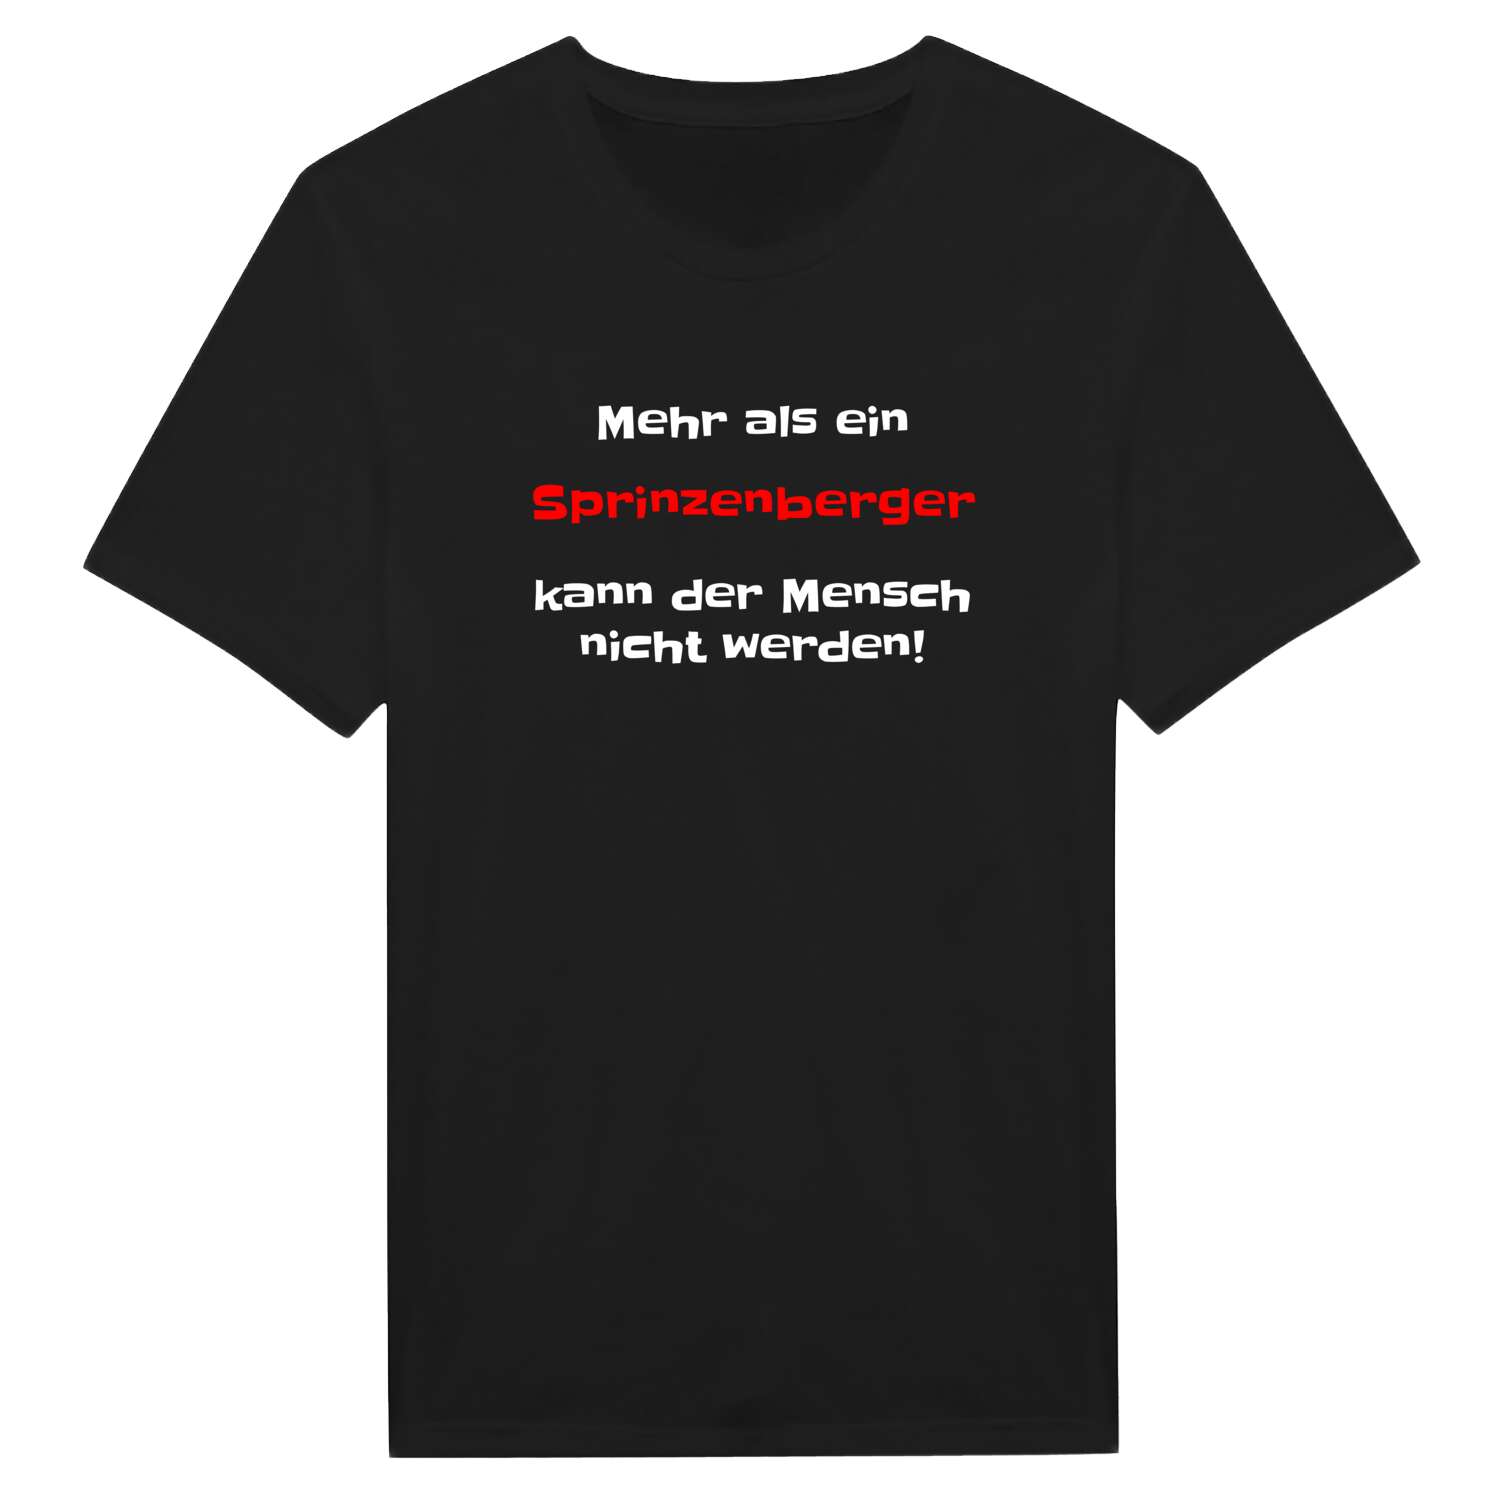 Sprinzenberg T-Shirt »Mehr als ein«